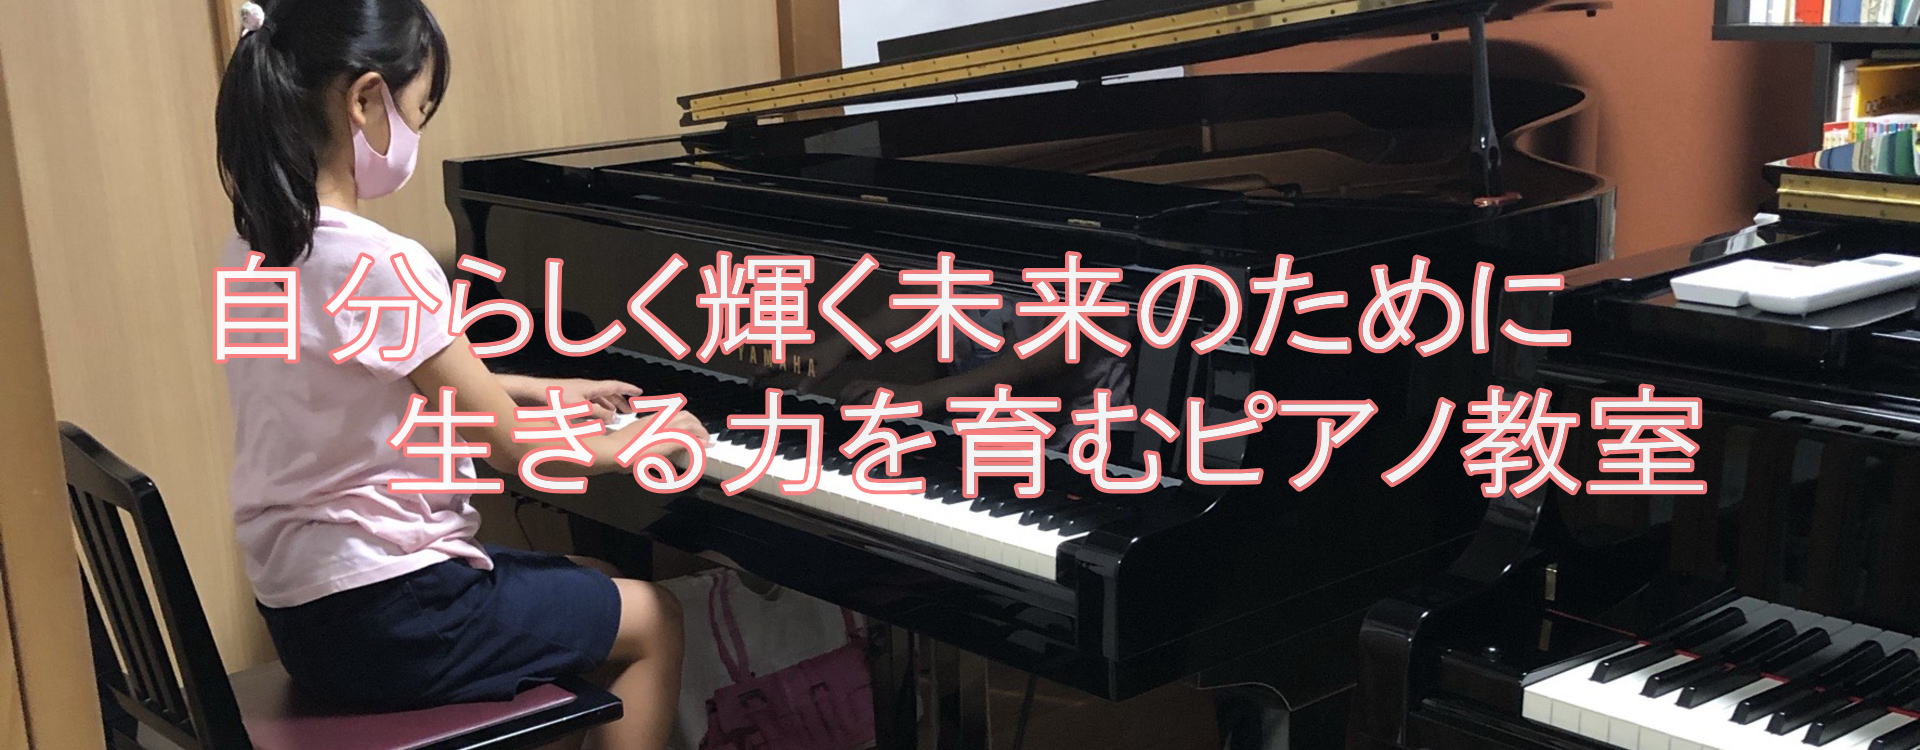 びおんピアノ音楽教室